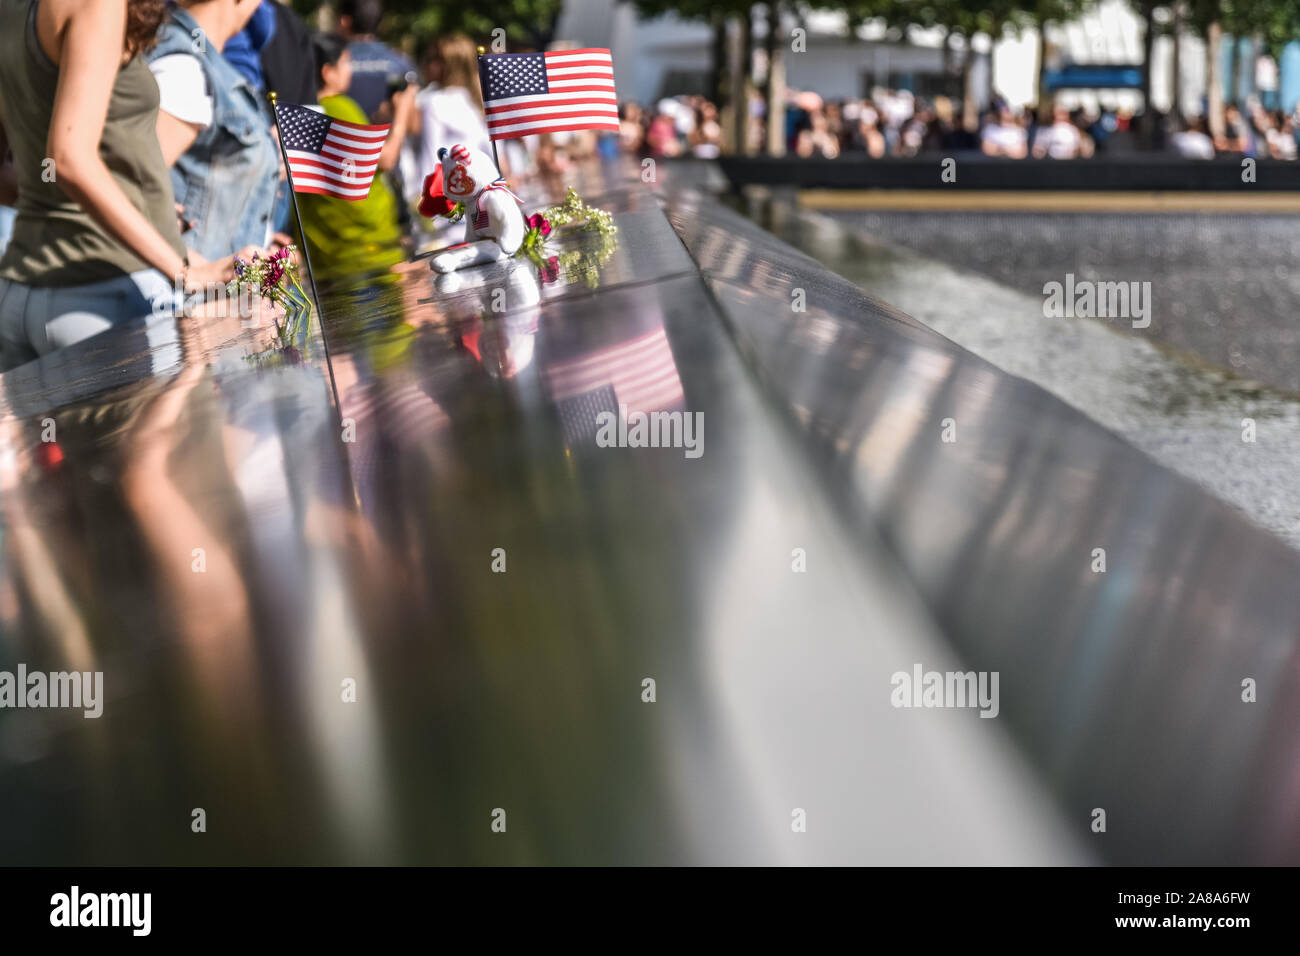 Fotografie concettuale della zona zero memorial. Bandierine americane, fiori e la gente intorno al memorial, dimostrare rispetto per le vittime. Manhatan, N Foto Stock